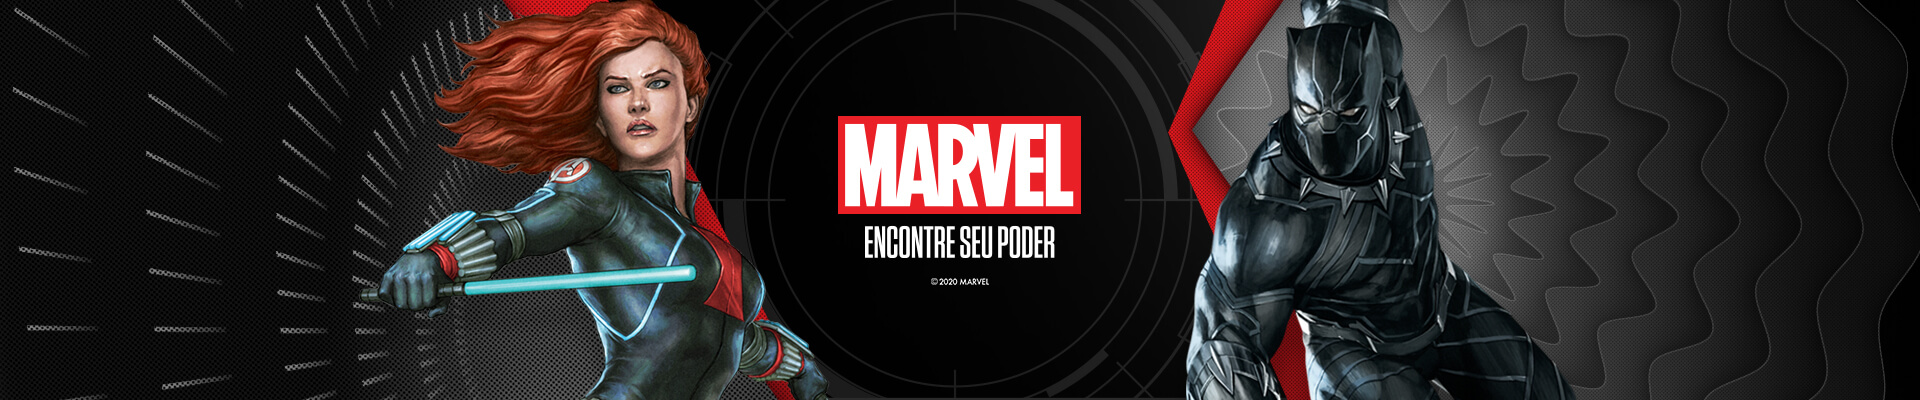 Slide Marvel 01